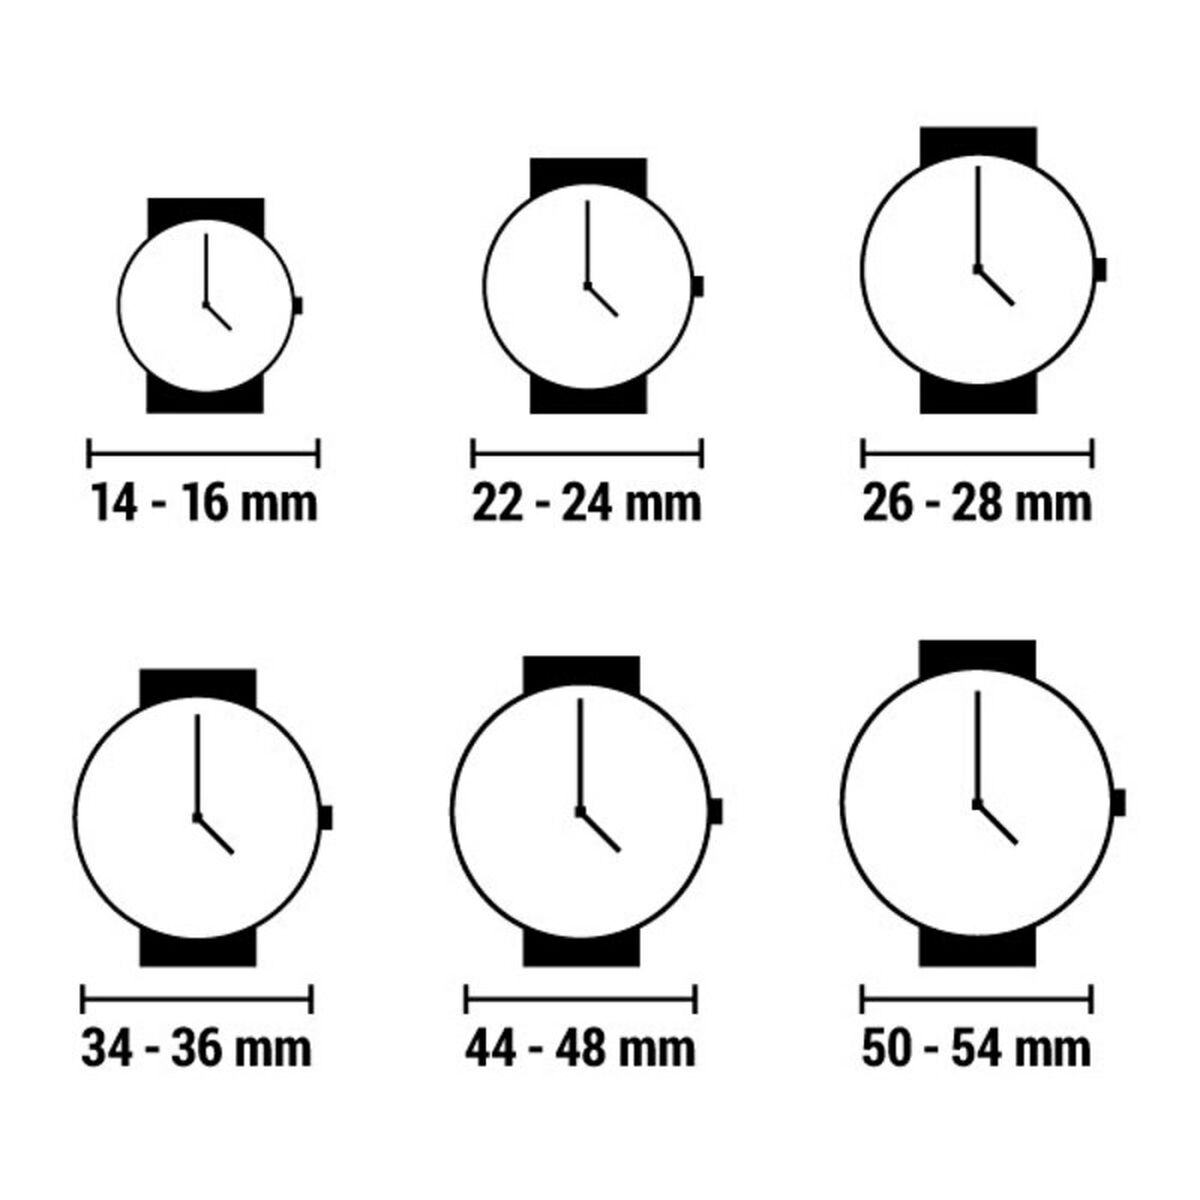 Horloge Dames Montres de Luxe EX L 8304 (Ø 35 mm) (Refurbished A)